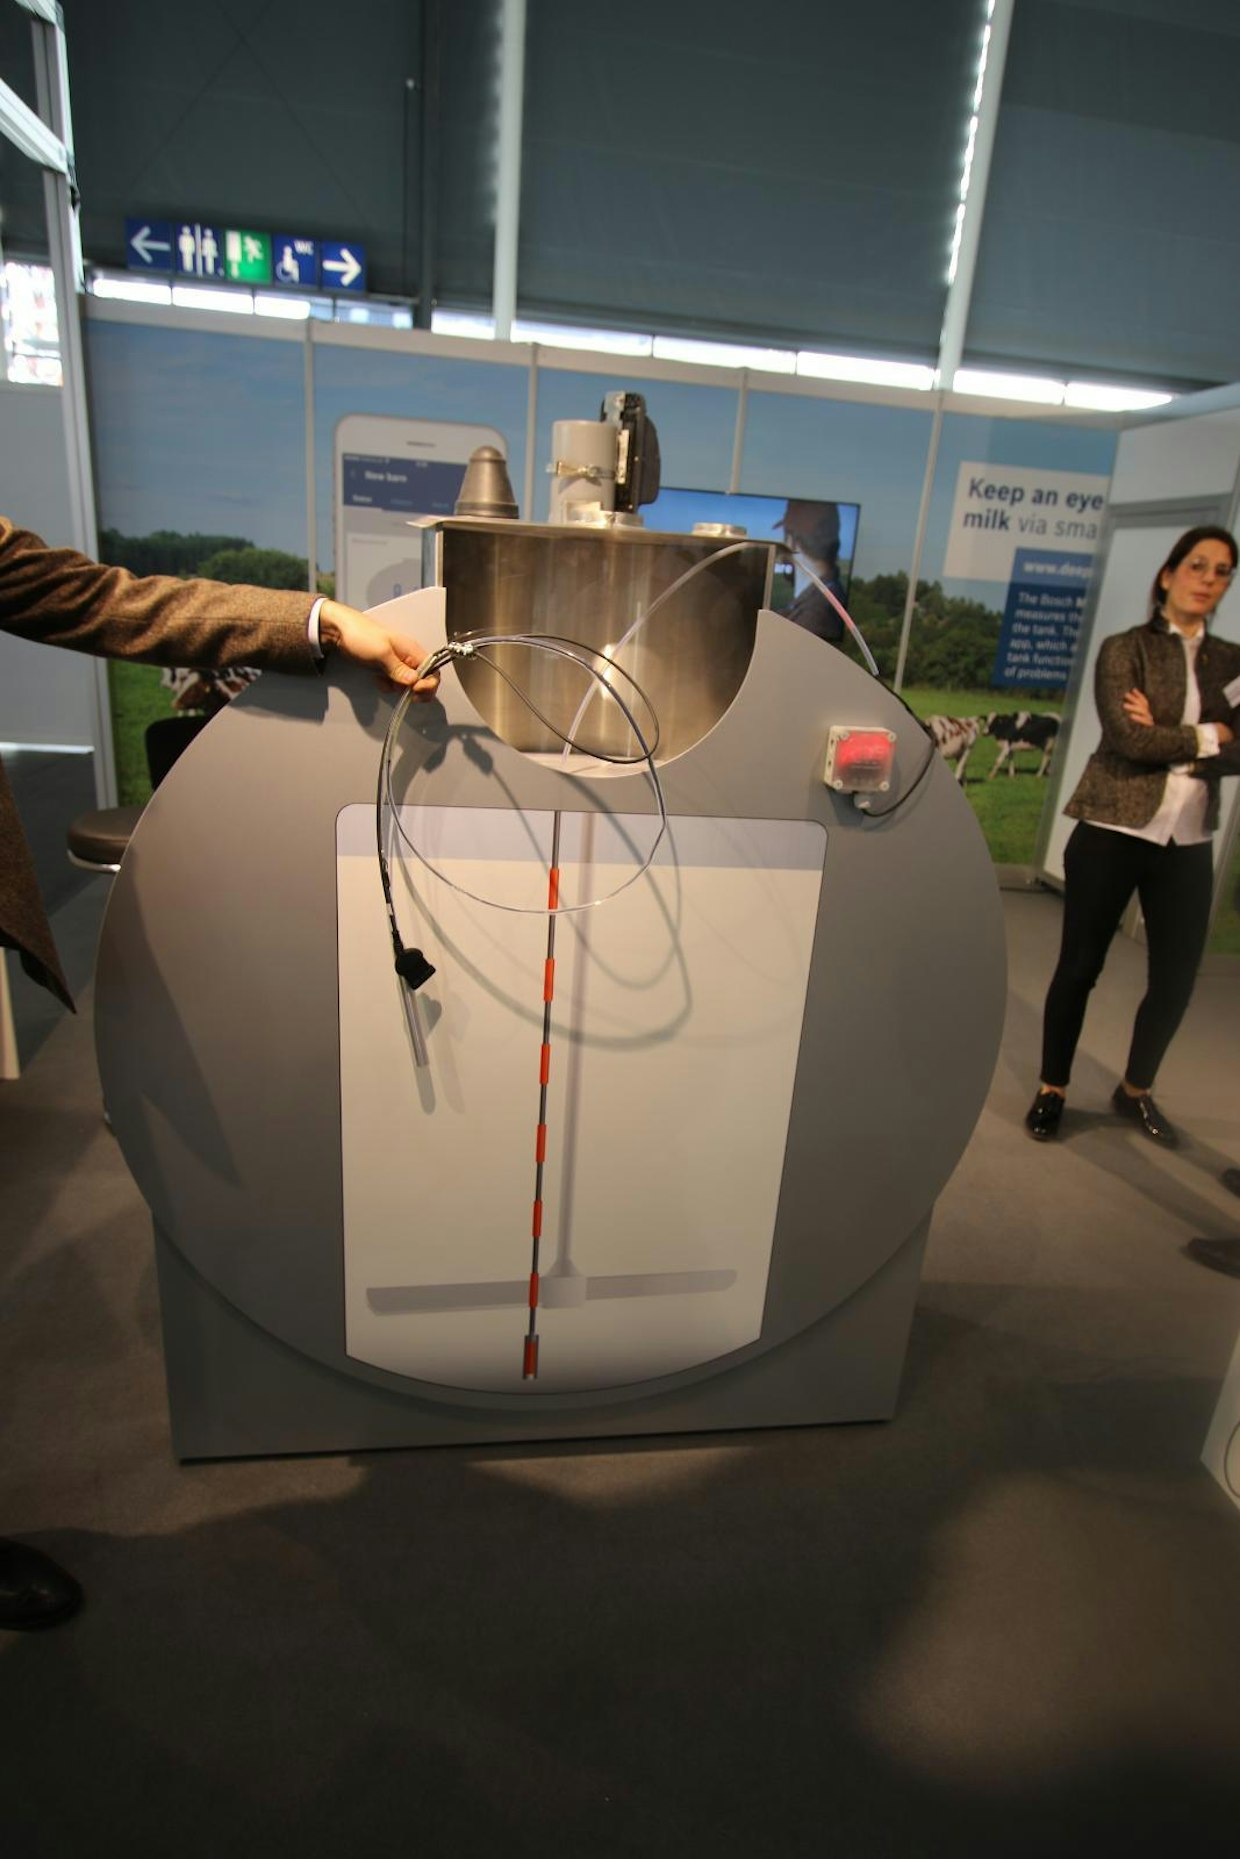 Bosch valmistaa jo käytössä oleviin tilasäiliöihin sopivaa lämpömittaria, joka mittaa maidon lämpötilan säiliön eri korkeuksista. Mittari voidaan asentaa lähes kaikkiin markkinoilla oleviin tilatankkeihin. Lämpötilat tallennetaan pilvipalveluun, josta niitä voi seurata jälkeenpäin. (UO)